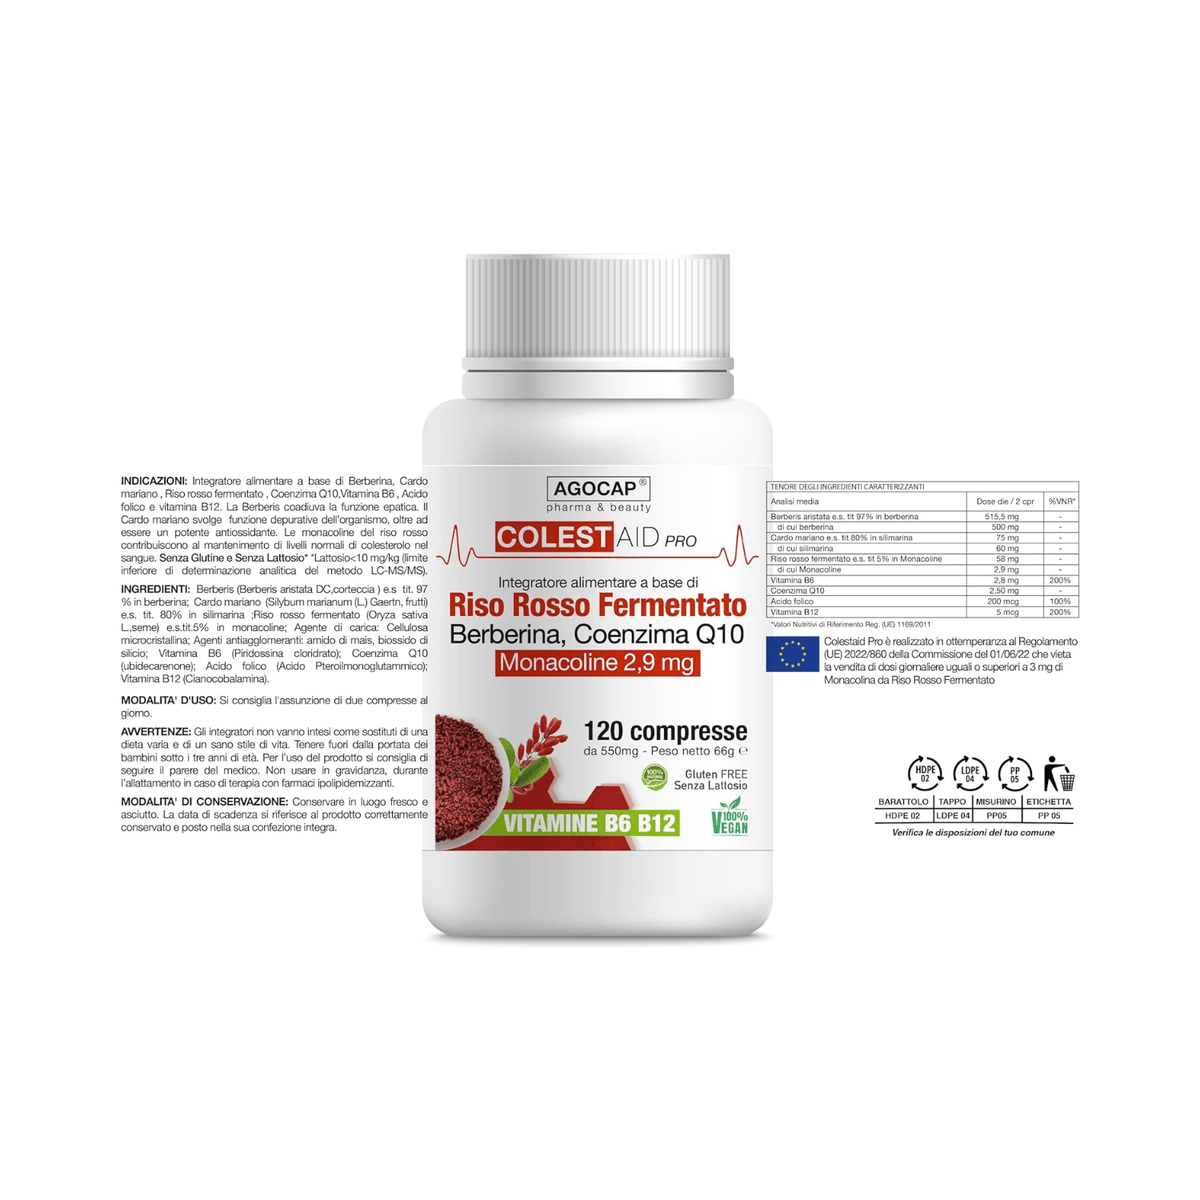 Integratore colesterolo riso rosso fermentato Colestaid. Agocap Pharma